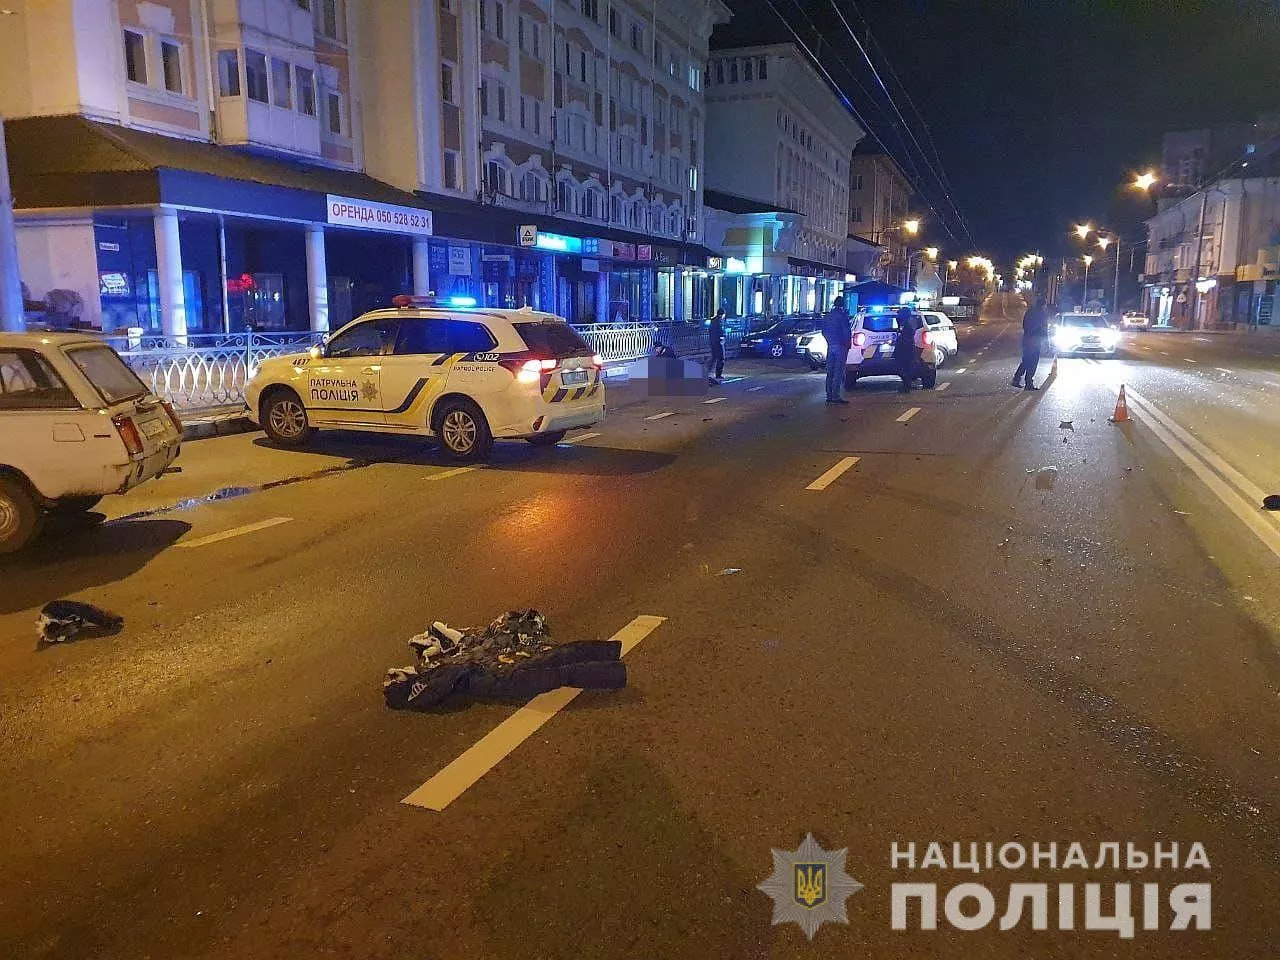 Известно, что погибший переходил дорогу в запрещенном месте/Фото: Нацполиция в Ровенской области